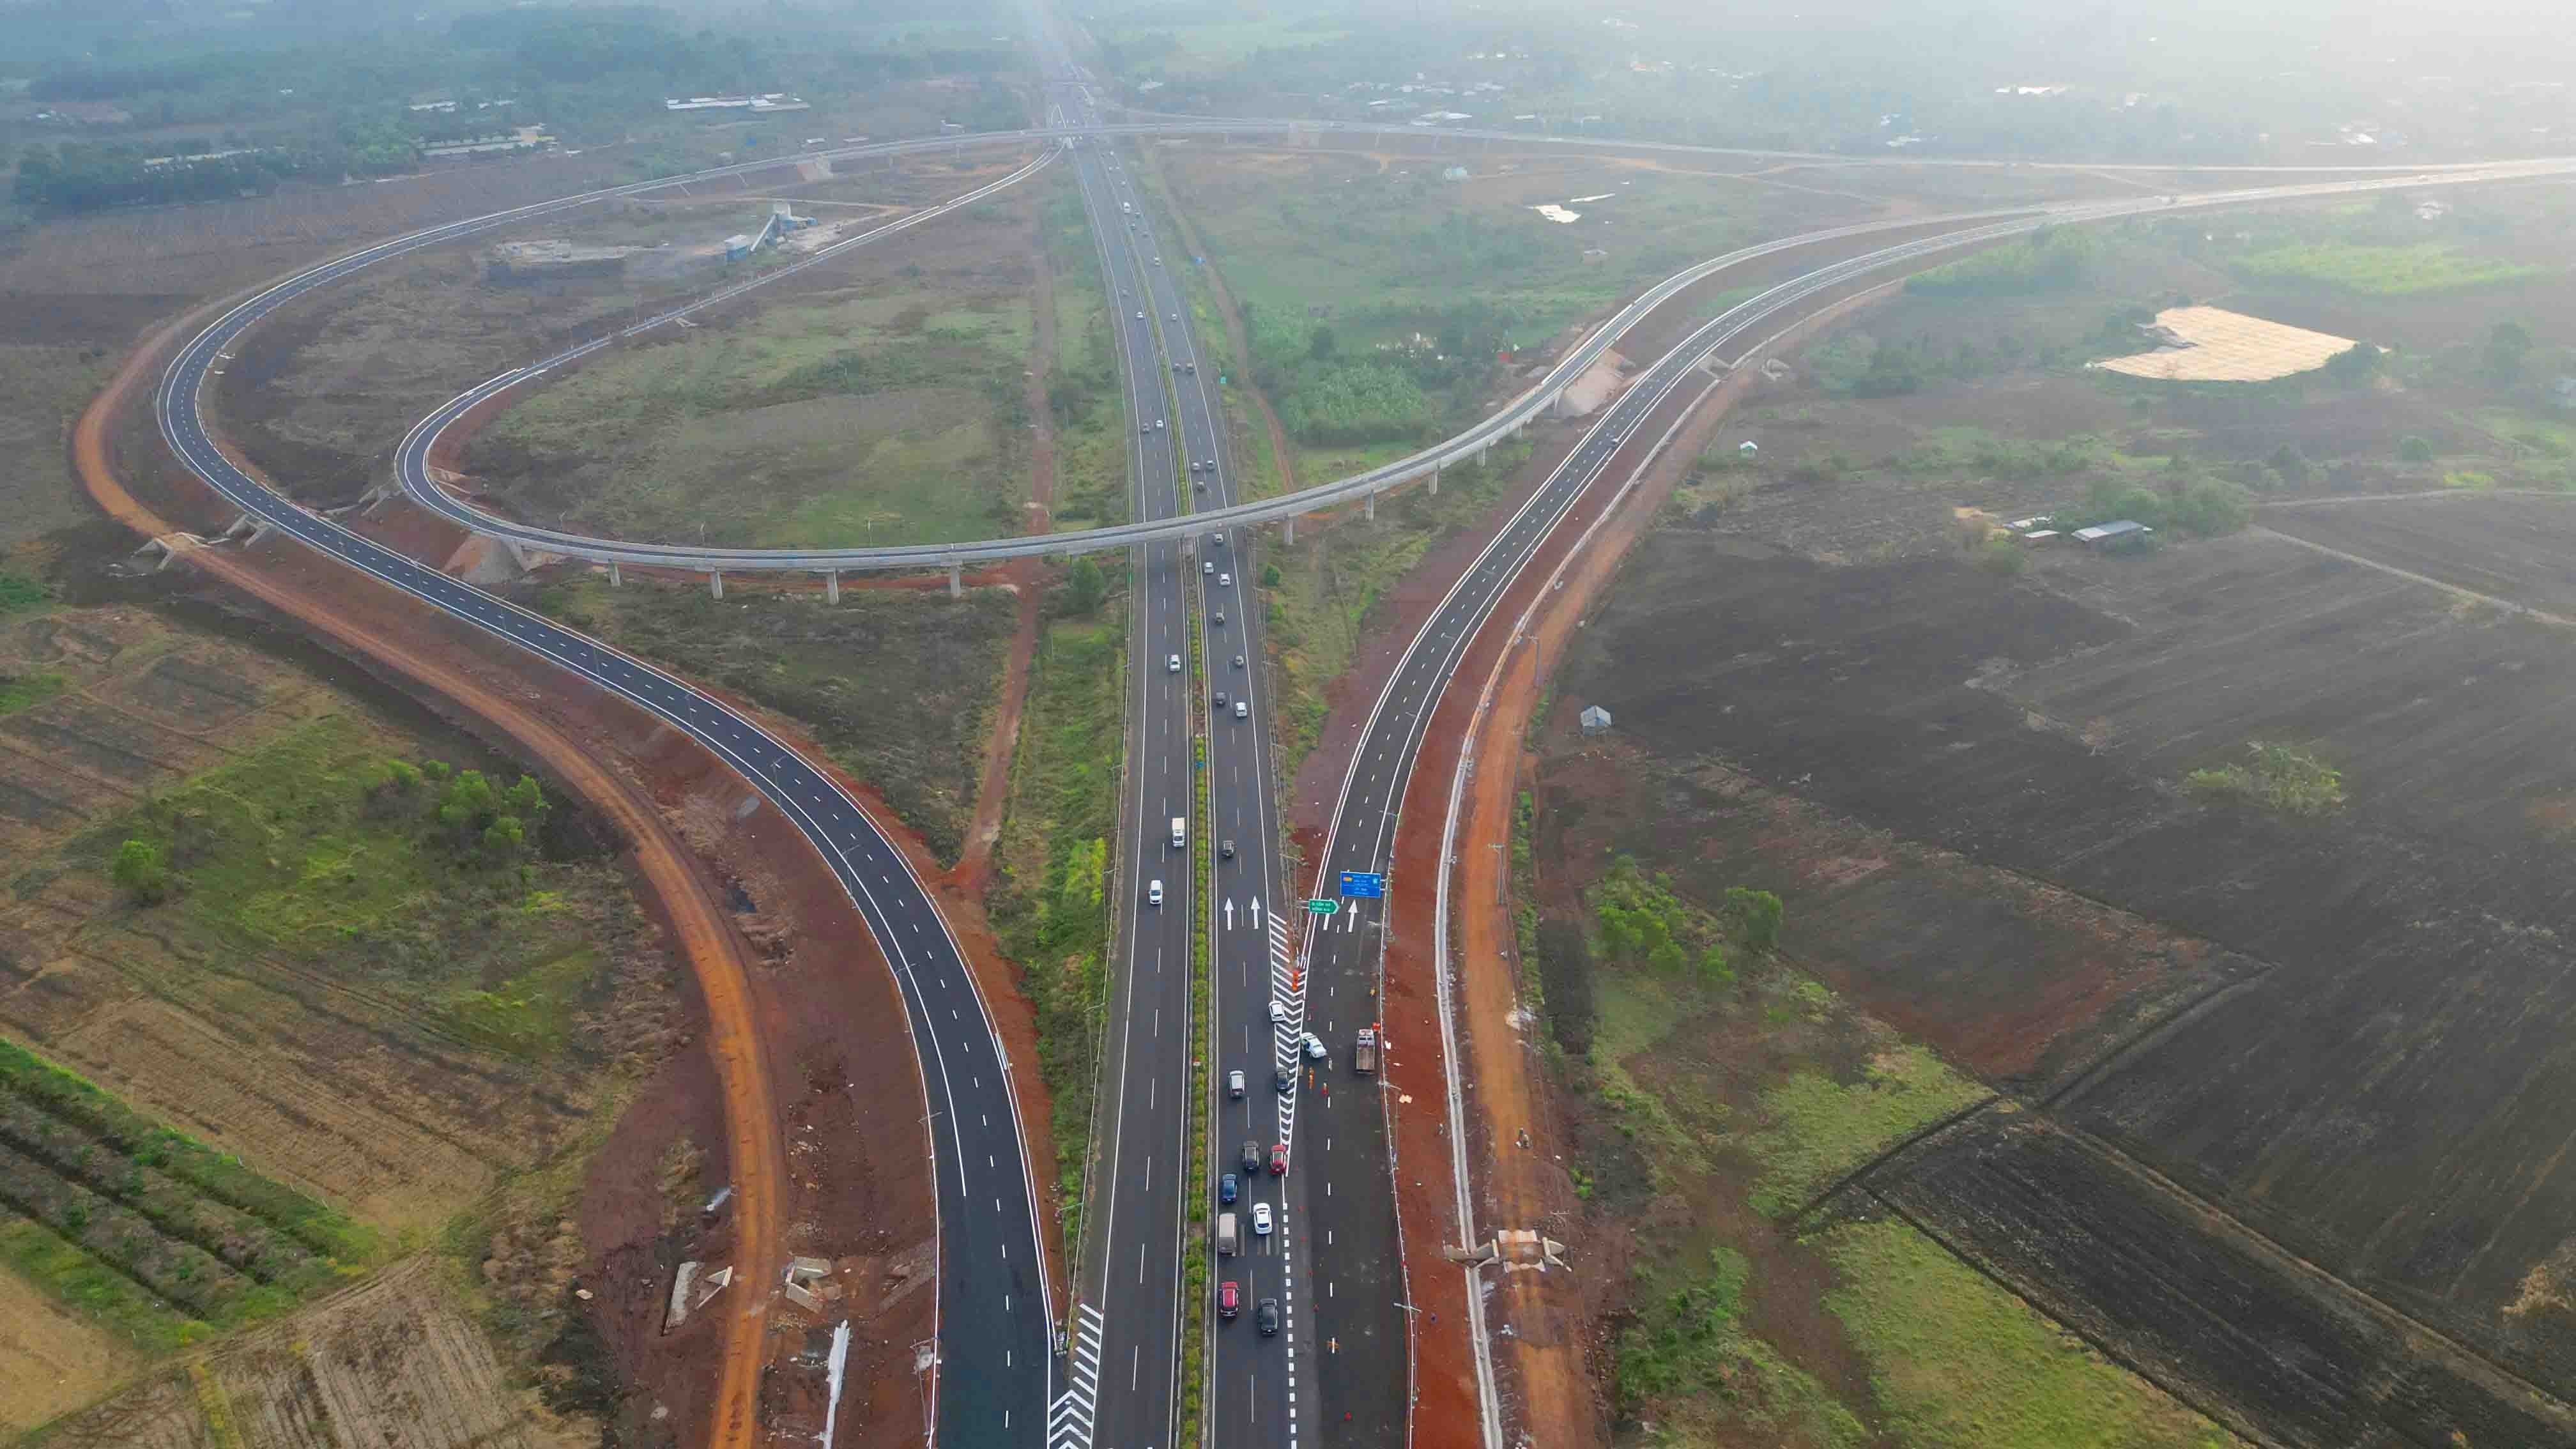 Điểm đầu của tuyến cao tốc Phan Thiết - Dầu Giây nối với cao tốc TP.HCM - Long Thành - Dầu Giây tại Đồng Nai  